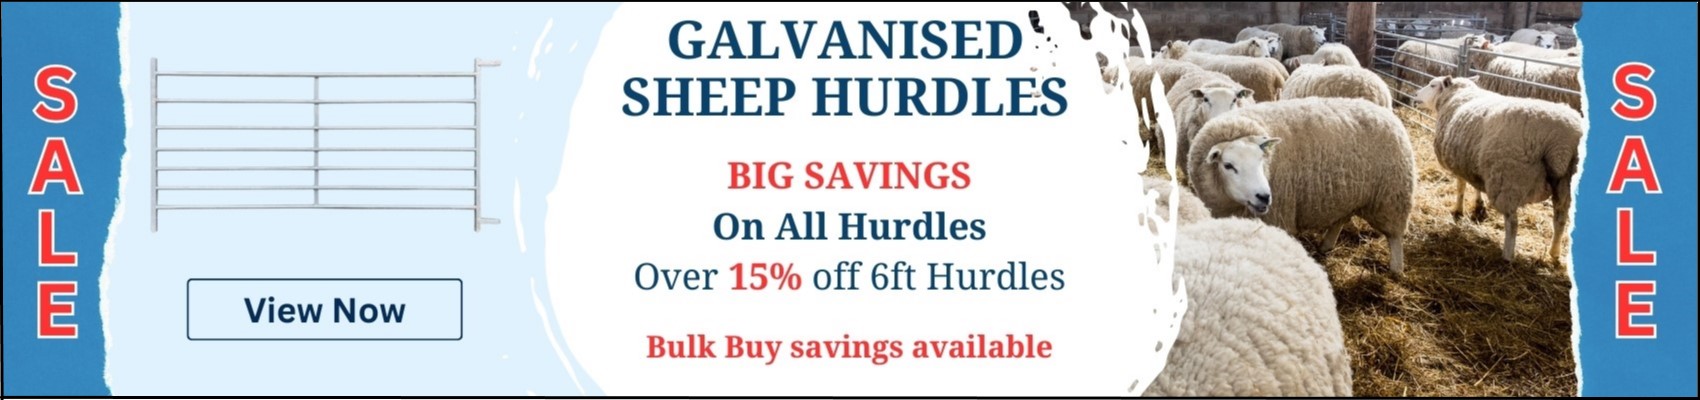 Galvanised Sheep Hurdle bulk buy savings